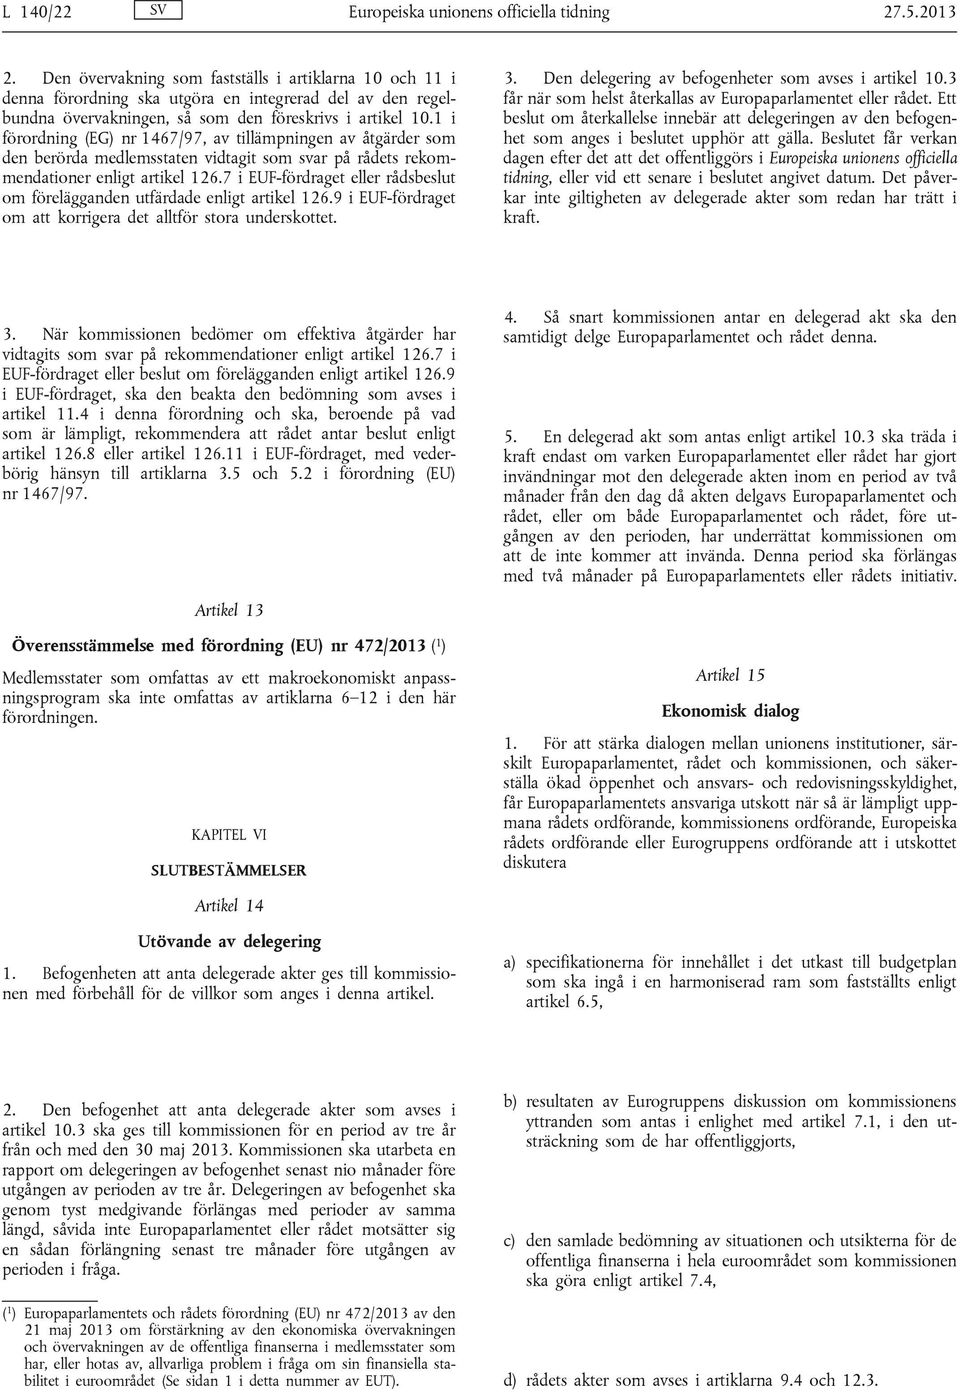 1 i förordning (EG) nr 1467/97, av tillämpningen av åtgärder som den berörda medlemsstaten vidtagit som svar på rådets rekommendationer enligt artikel 126.